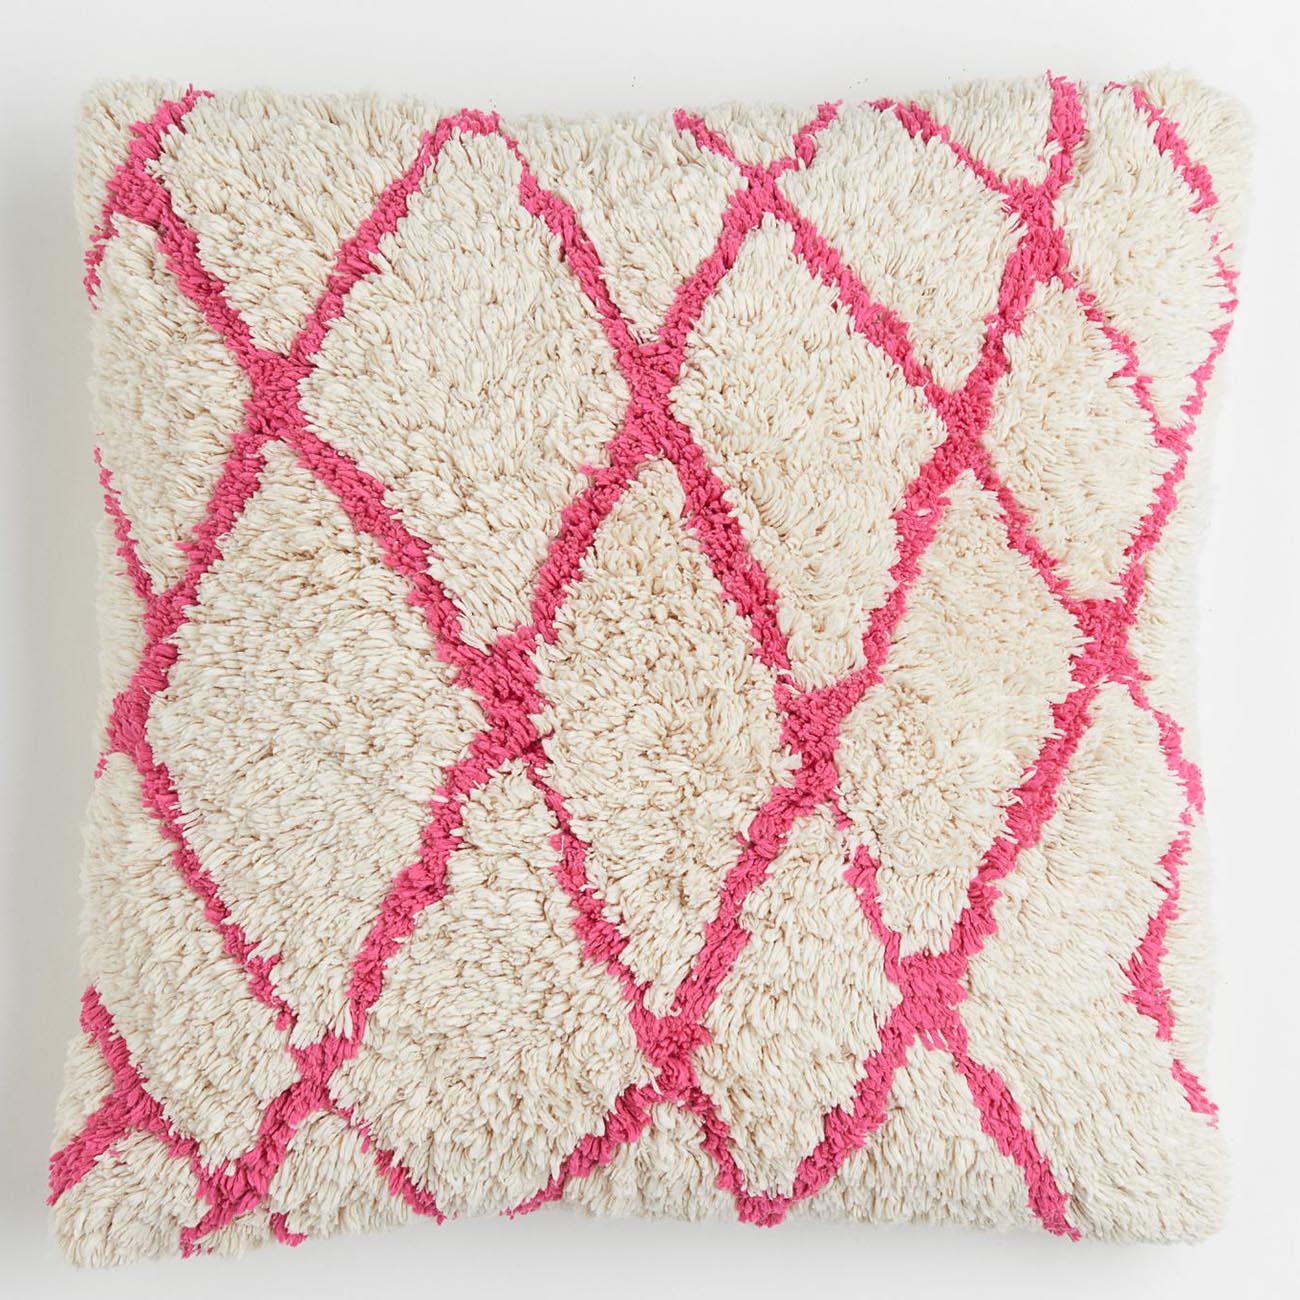 Чехол для подушки H&M Home Tufted, светло-бежевый/розовый пасхальный декоративный чехол для подушки чехол для подушки кролик кролик принт полиэфир декоративный чехол для дивана подушки